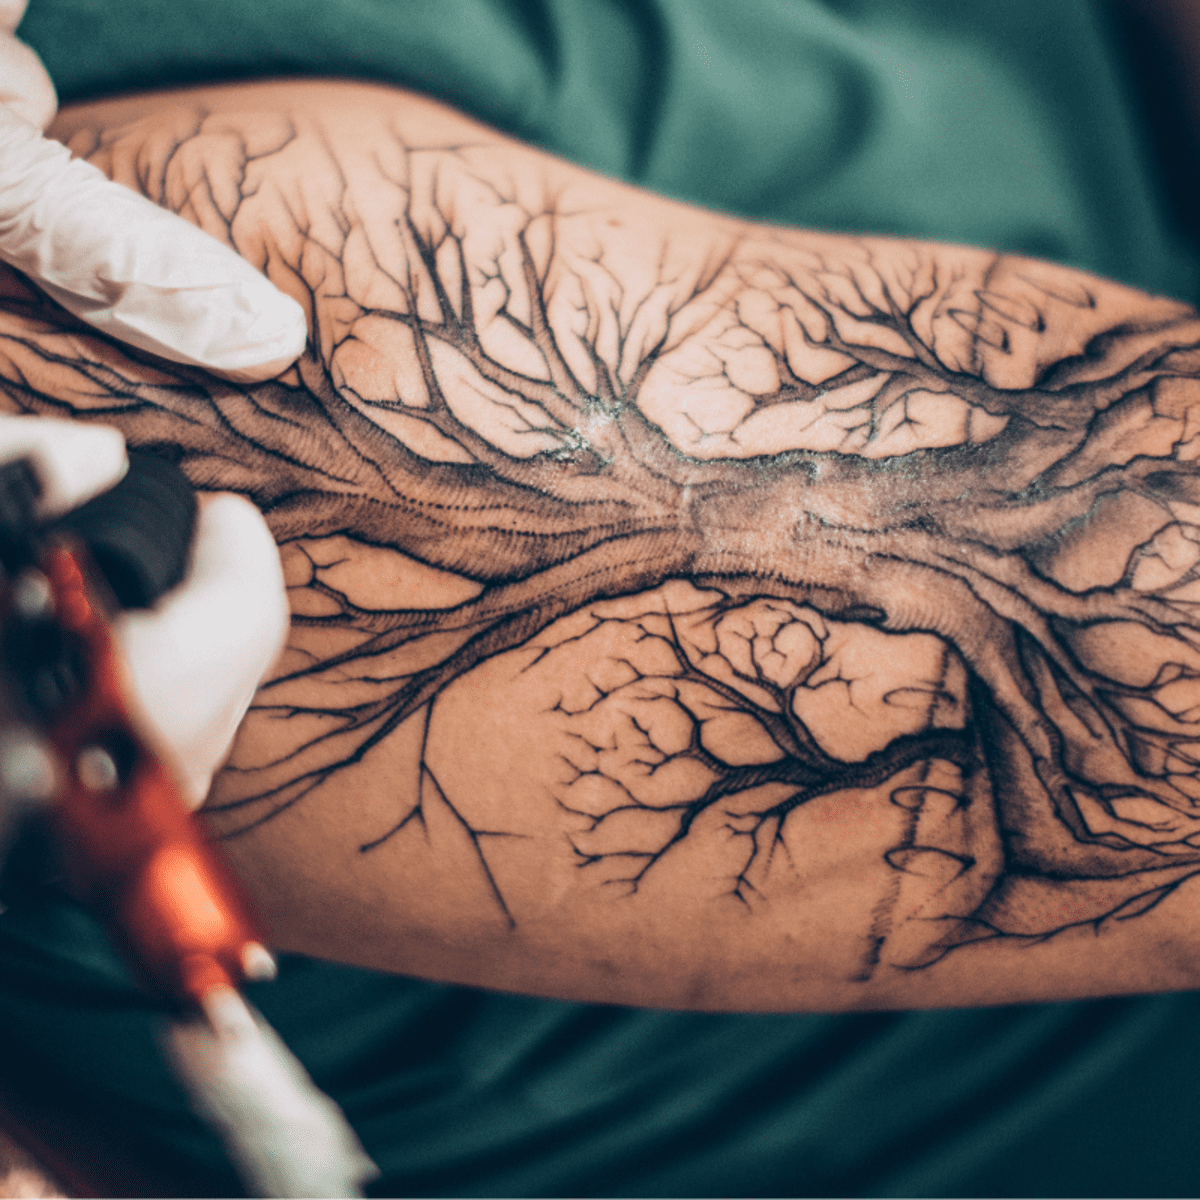 Raven Memorial Tattoo | Memorial tattoo, Tattoos, Tree tattoo